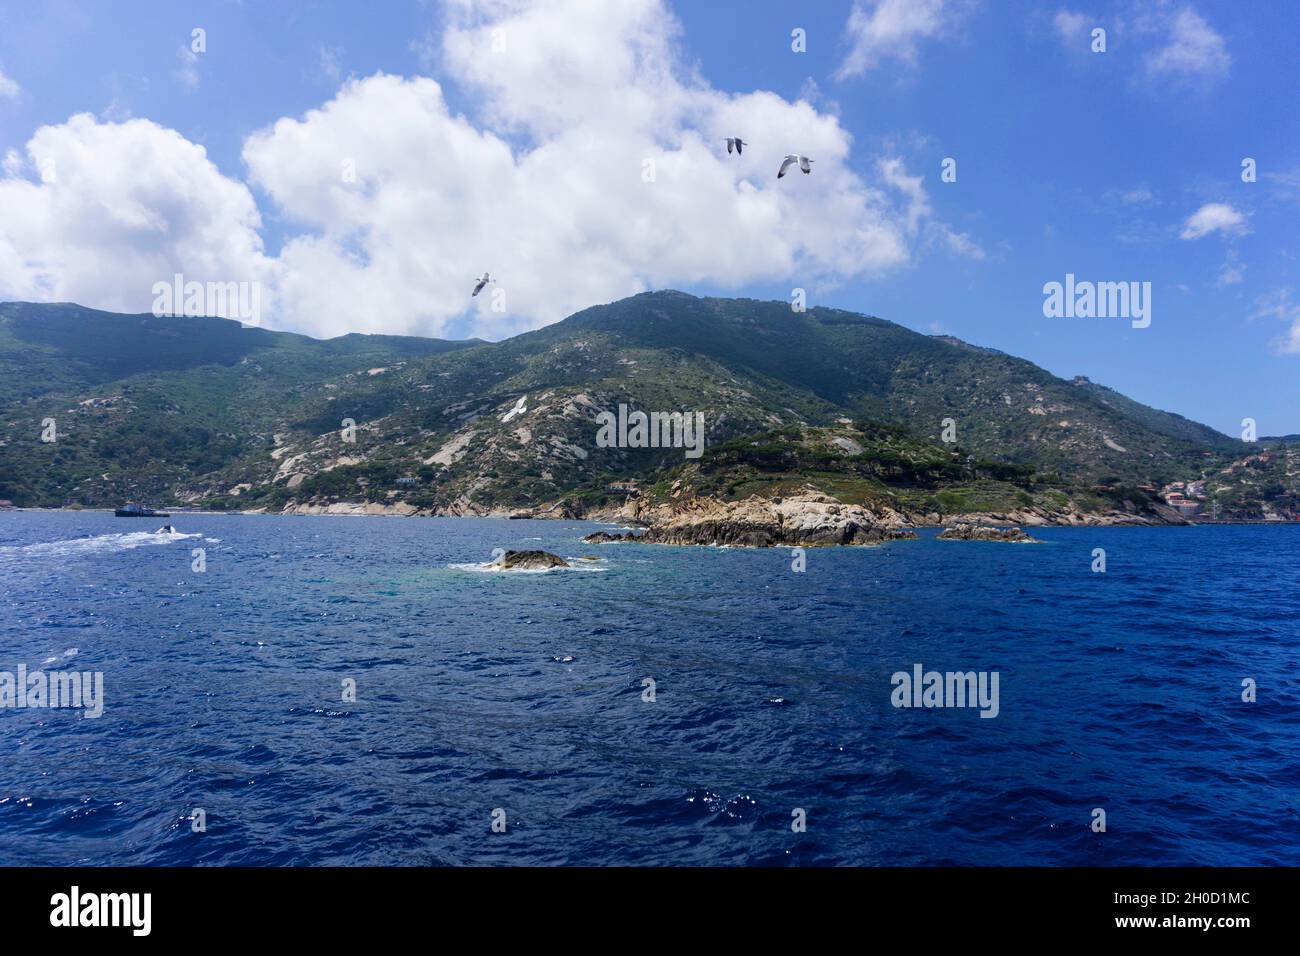 Tuscan Archipelago, Isola del Giglio, Tuscany, Italy, Europe Stock Photo